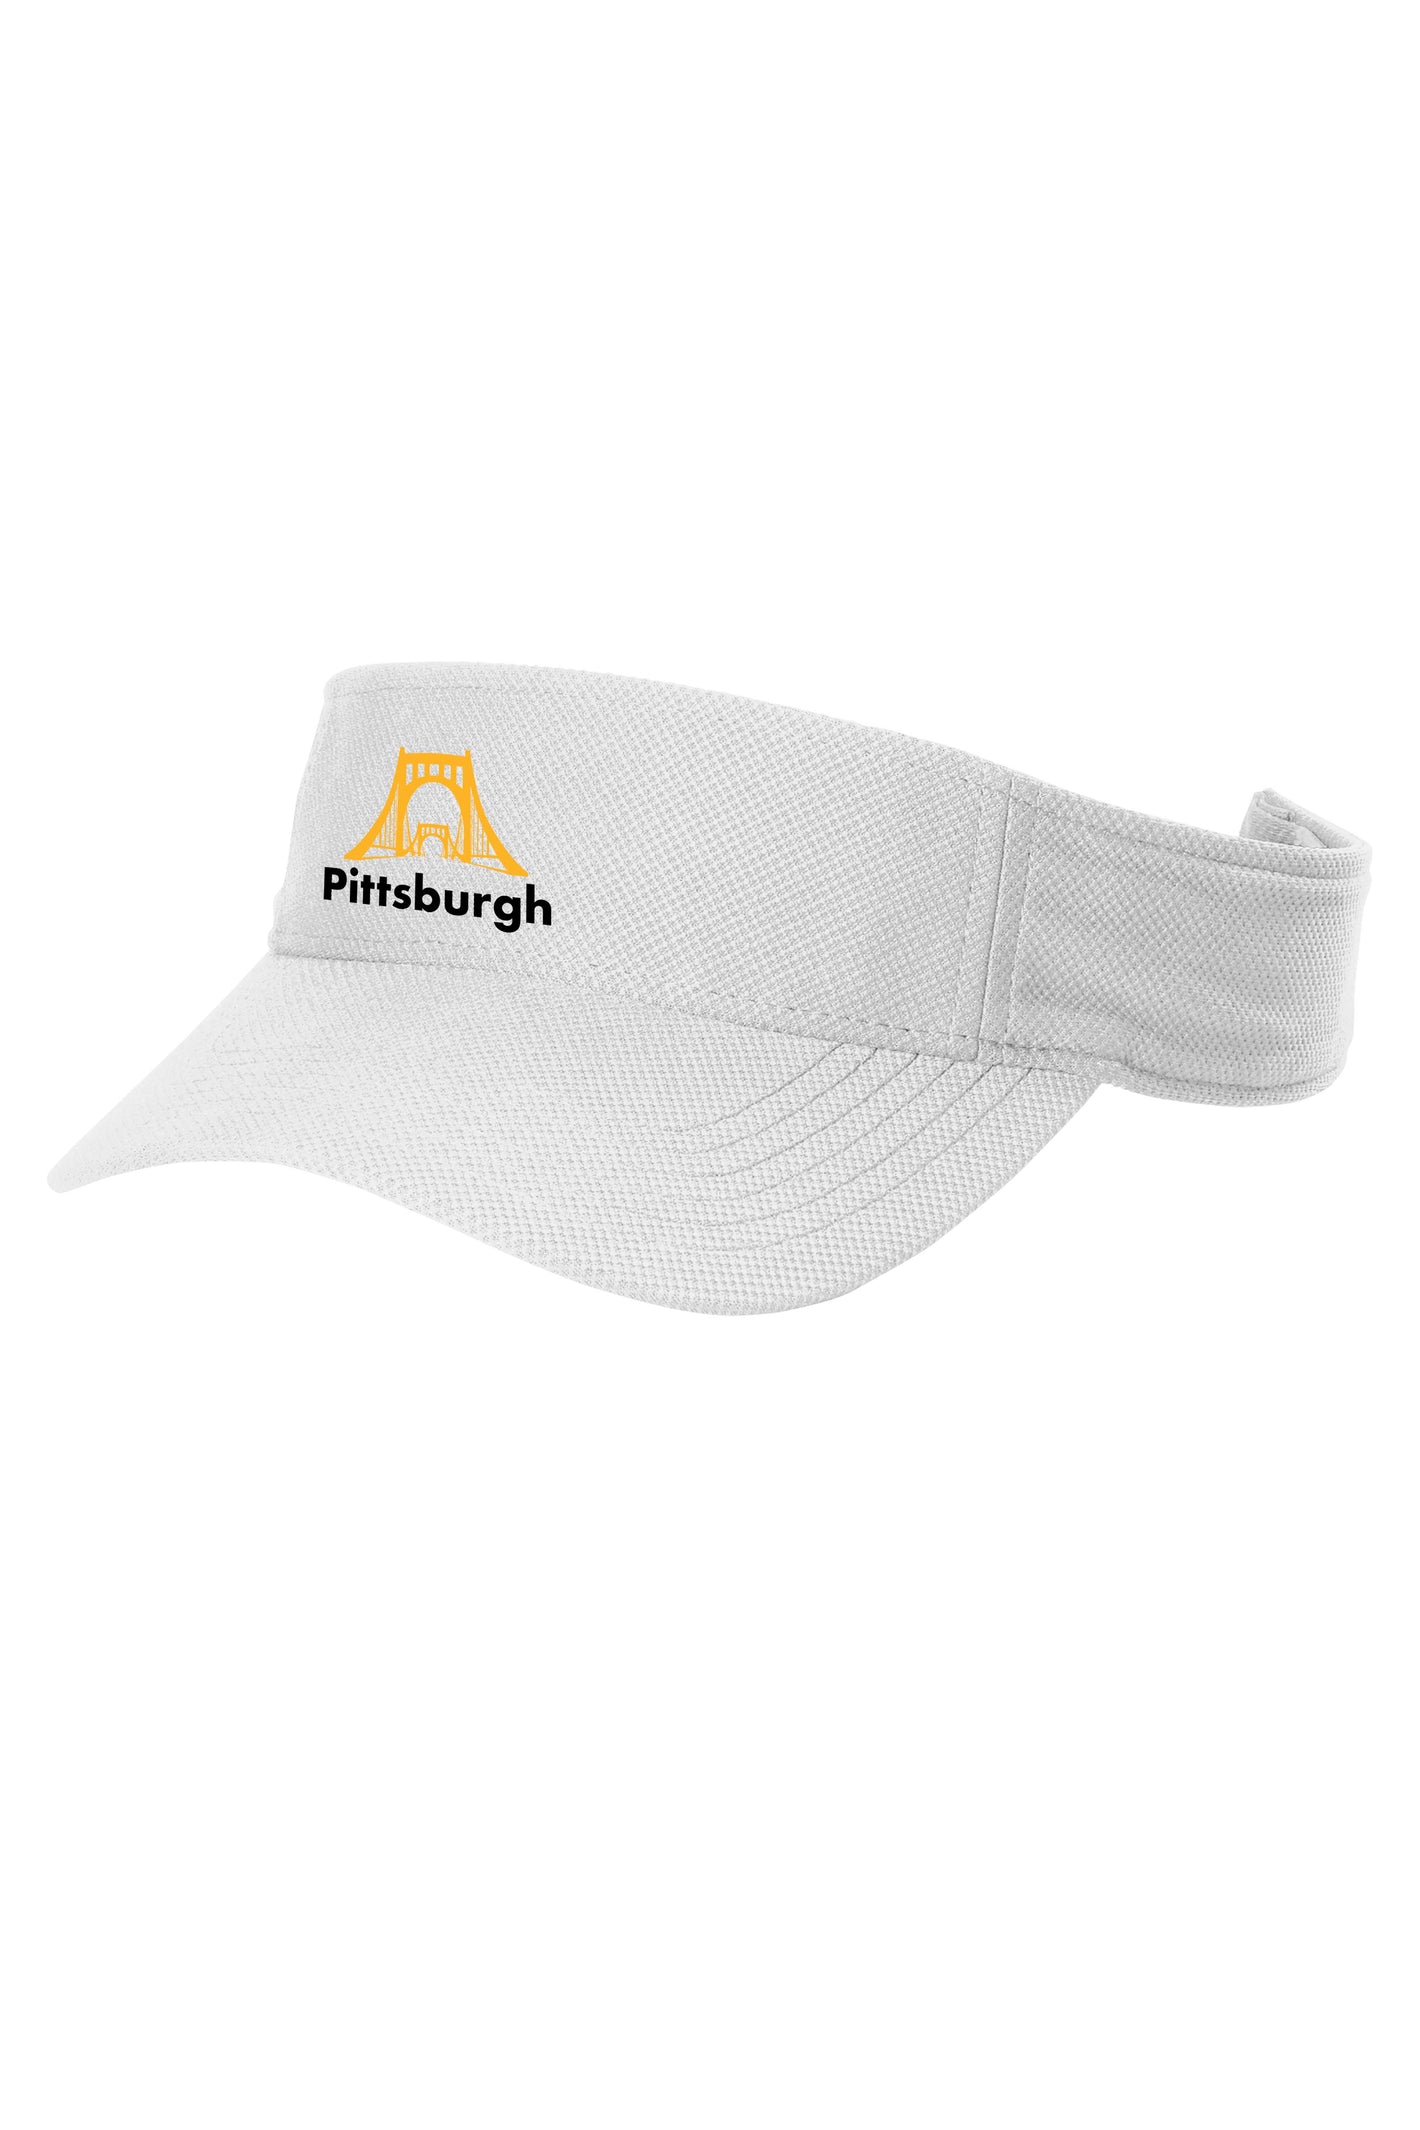 Pittsburgh Bridge Running Visor - White